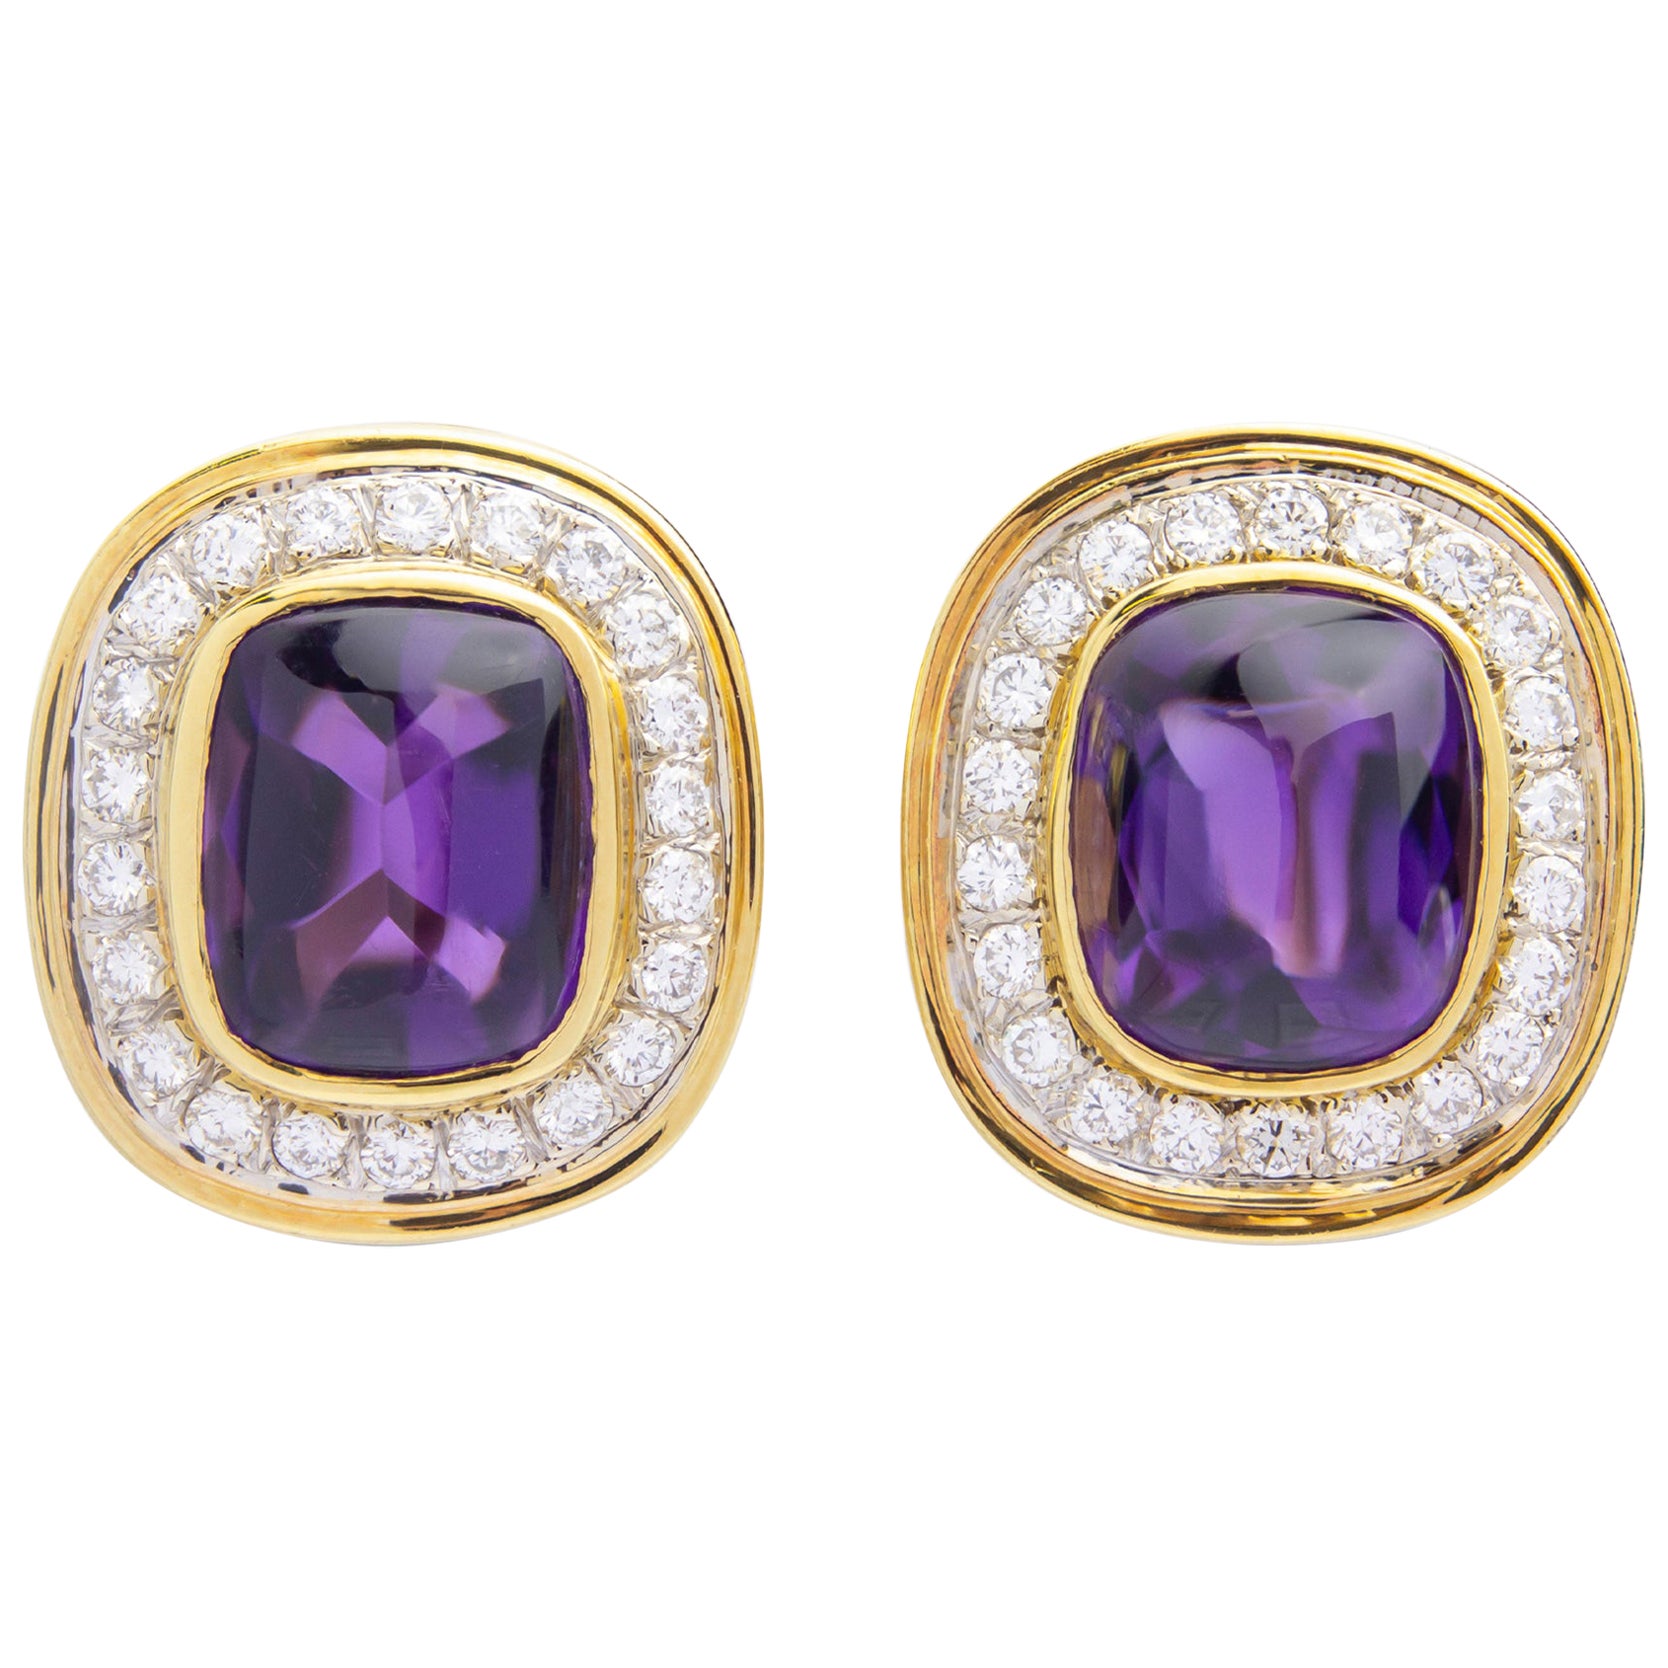 Cartier, Amethyst & Diamond Ear Clips in 18 Karat Gold